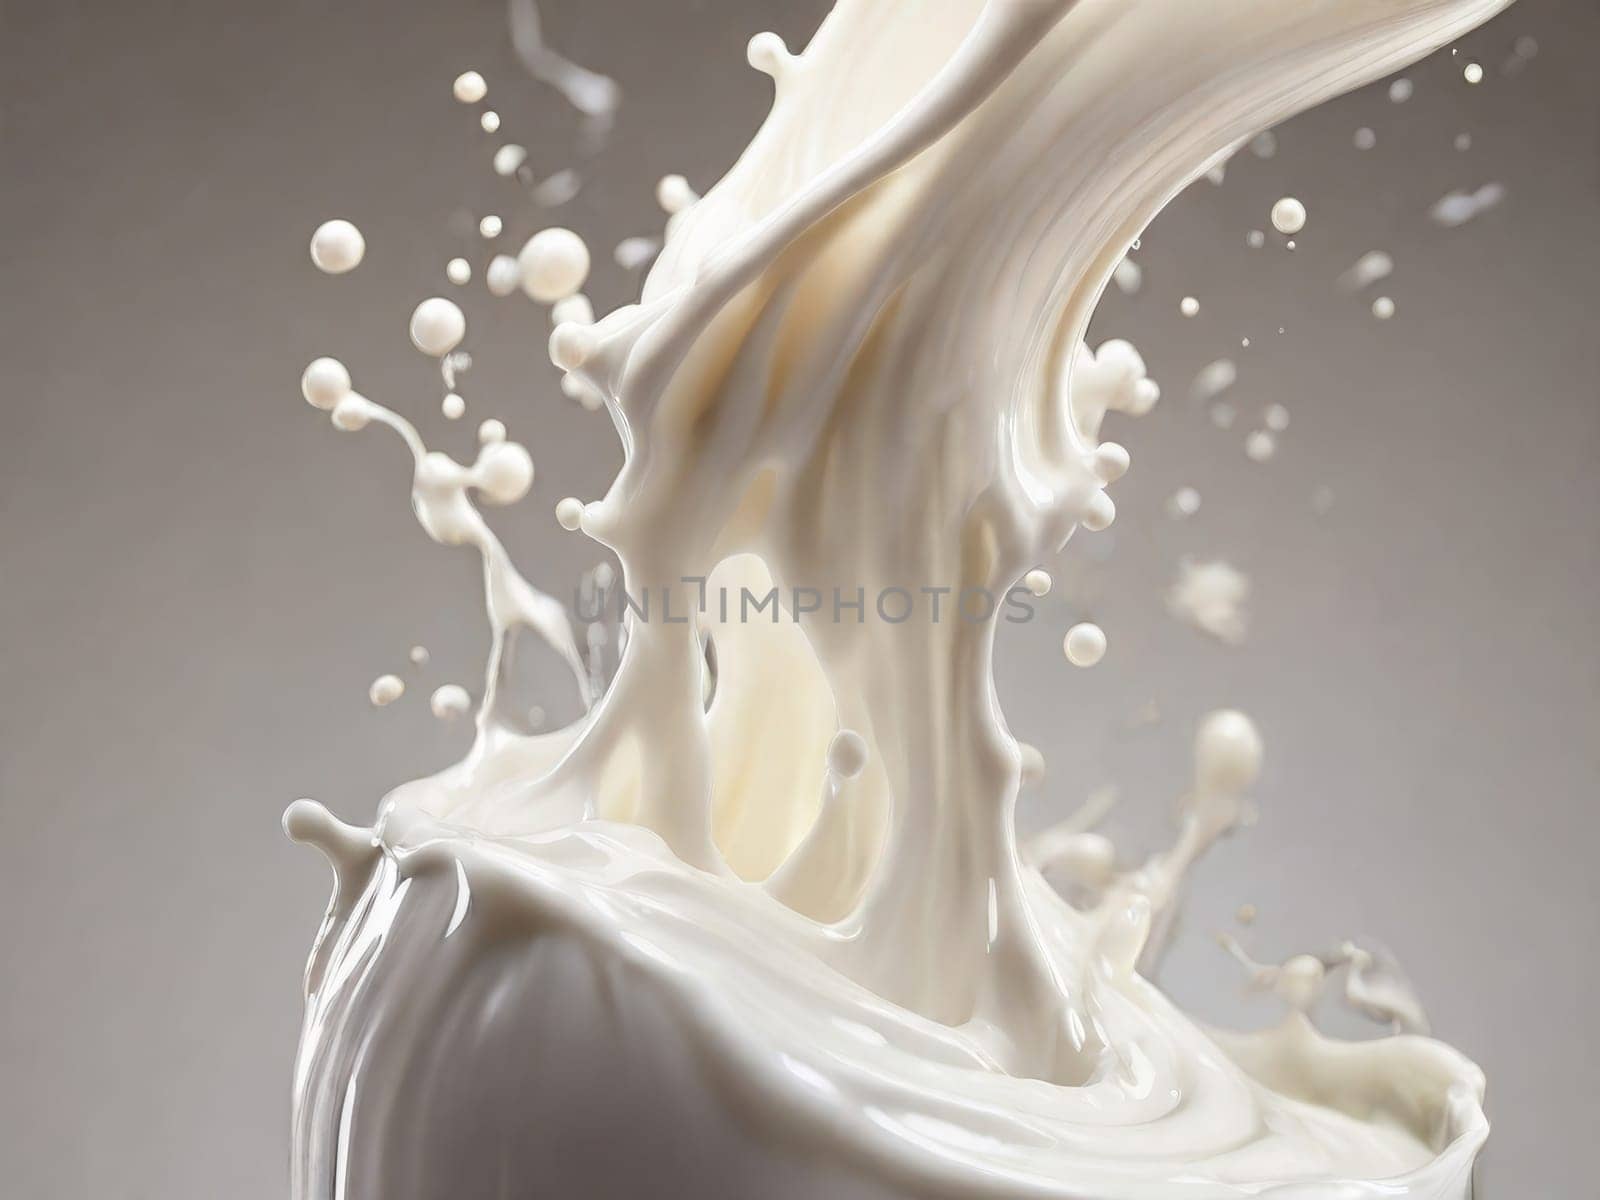 splashing milk on white background.